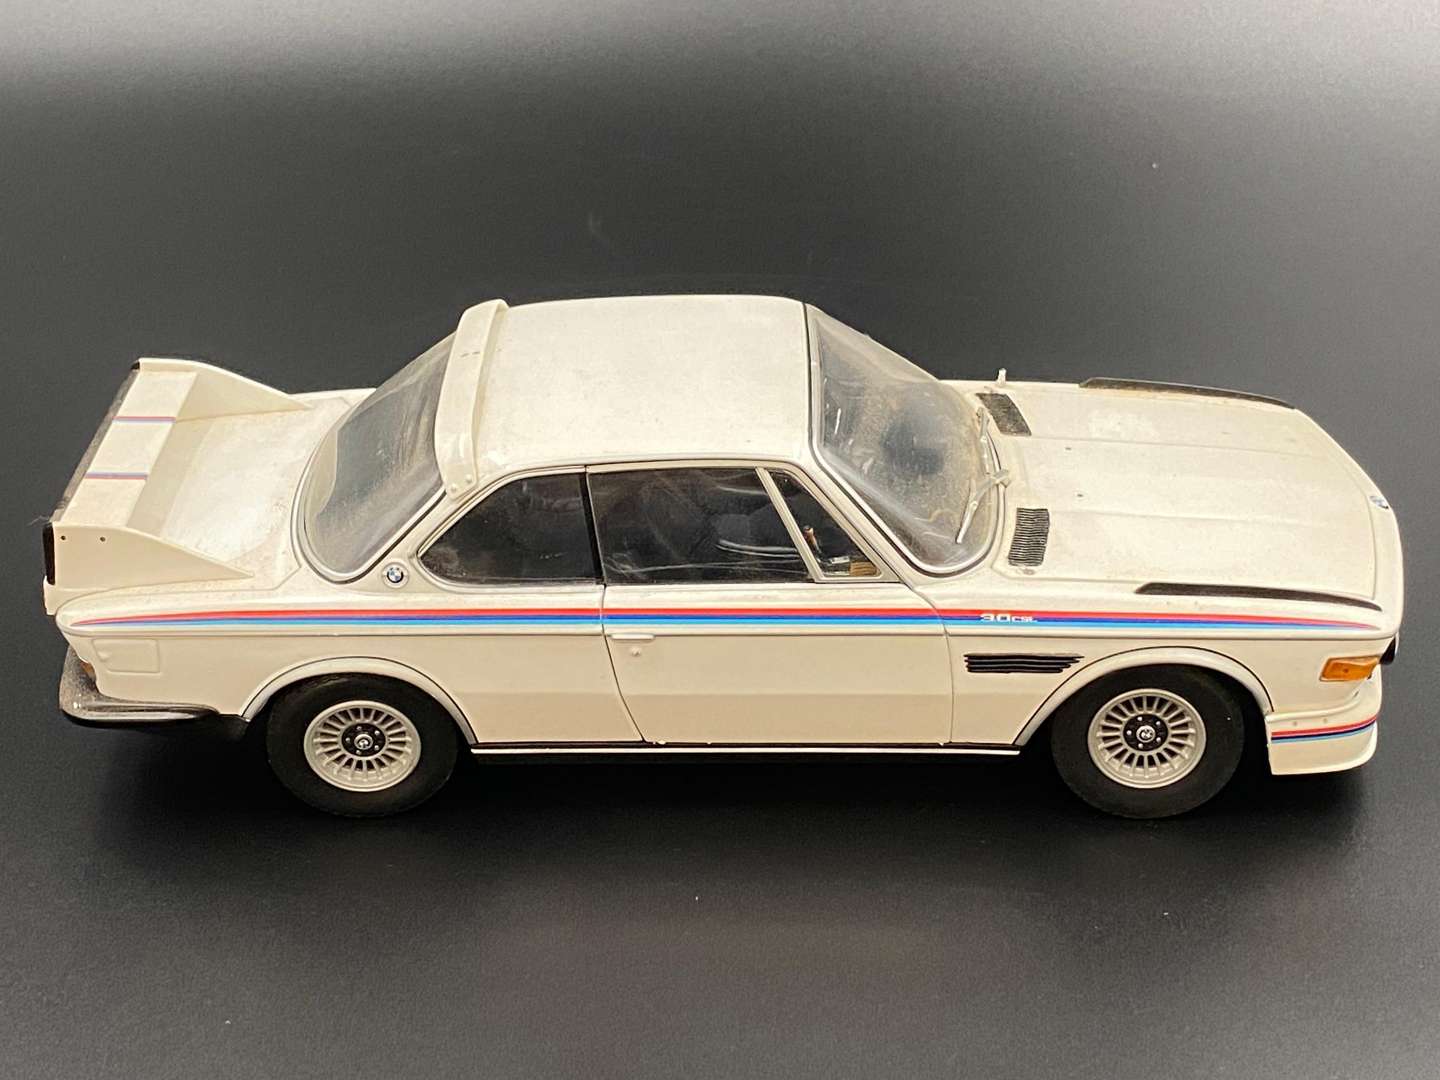 <p>MINICHAMPS,1973, BMW 3.0 CSL&nbsp;</p>